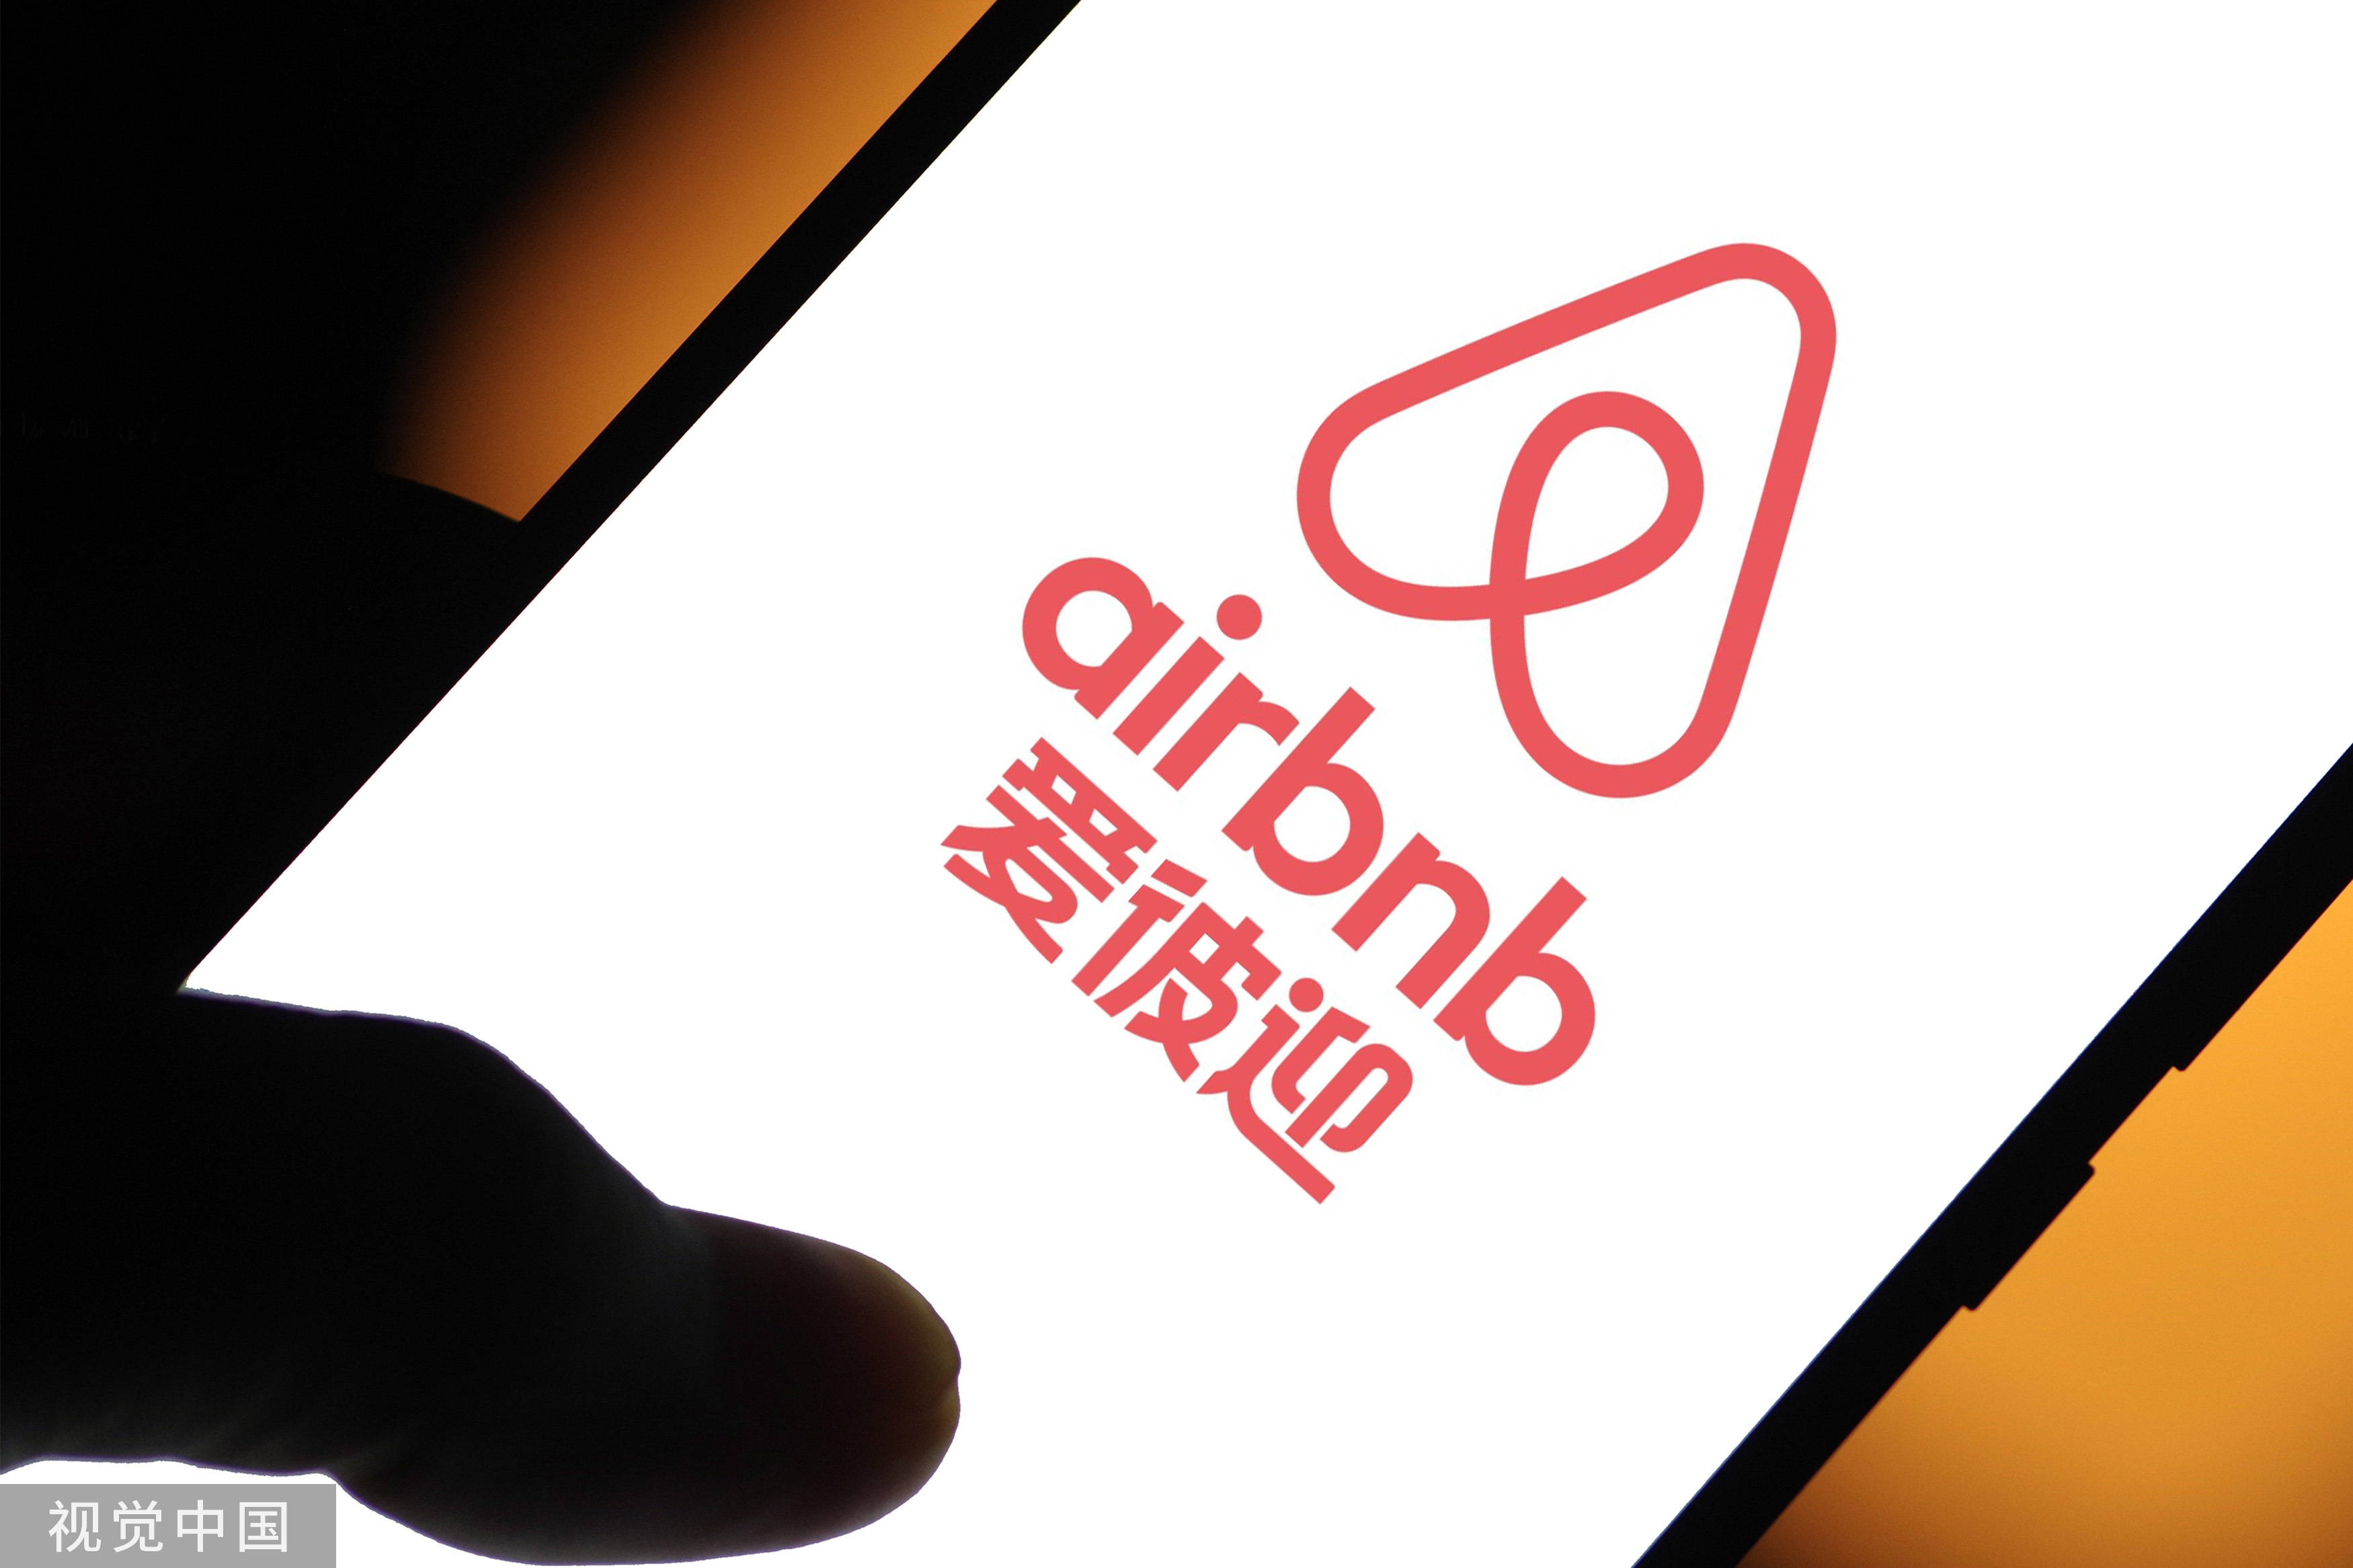 报道称<strong></p>
<p>BNB币安</strong>，Airbnb打算关闭其在中国的所有房源